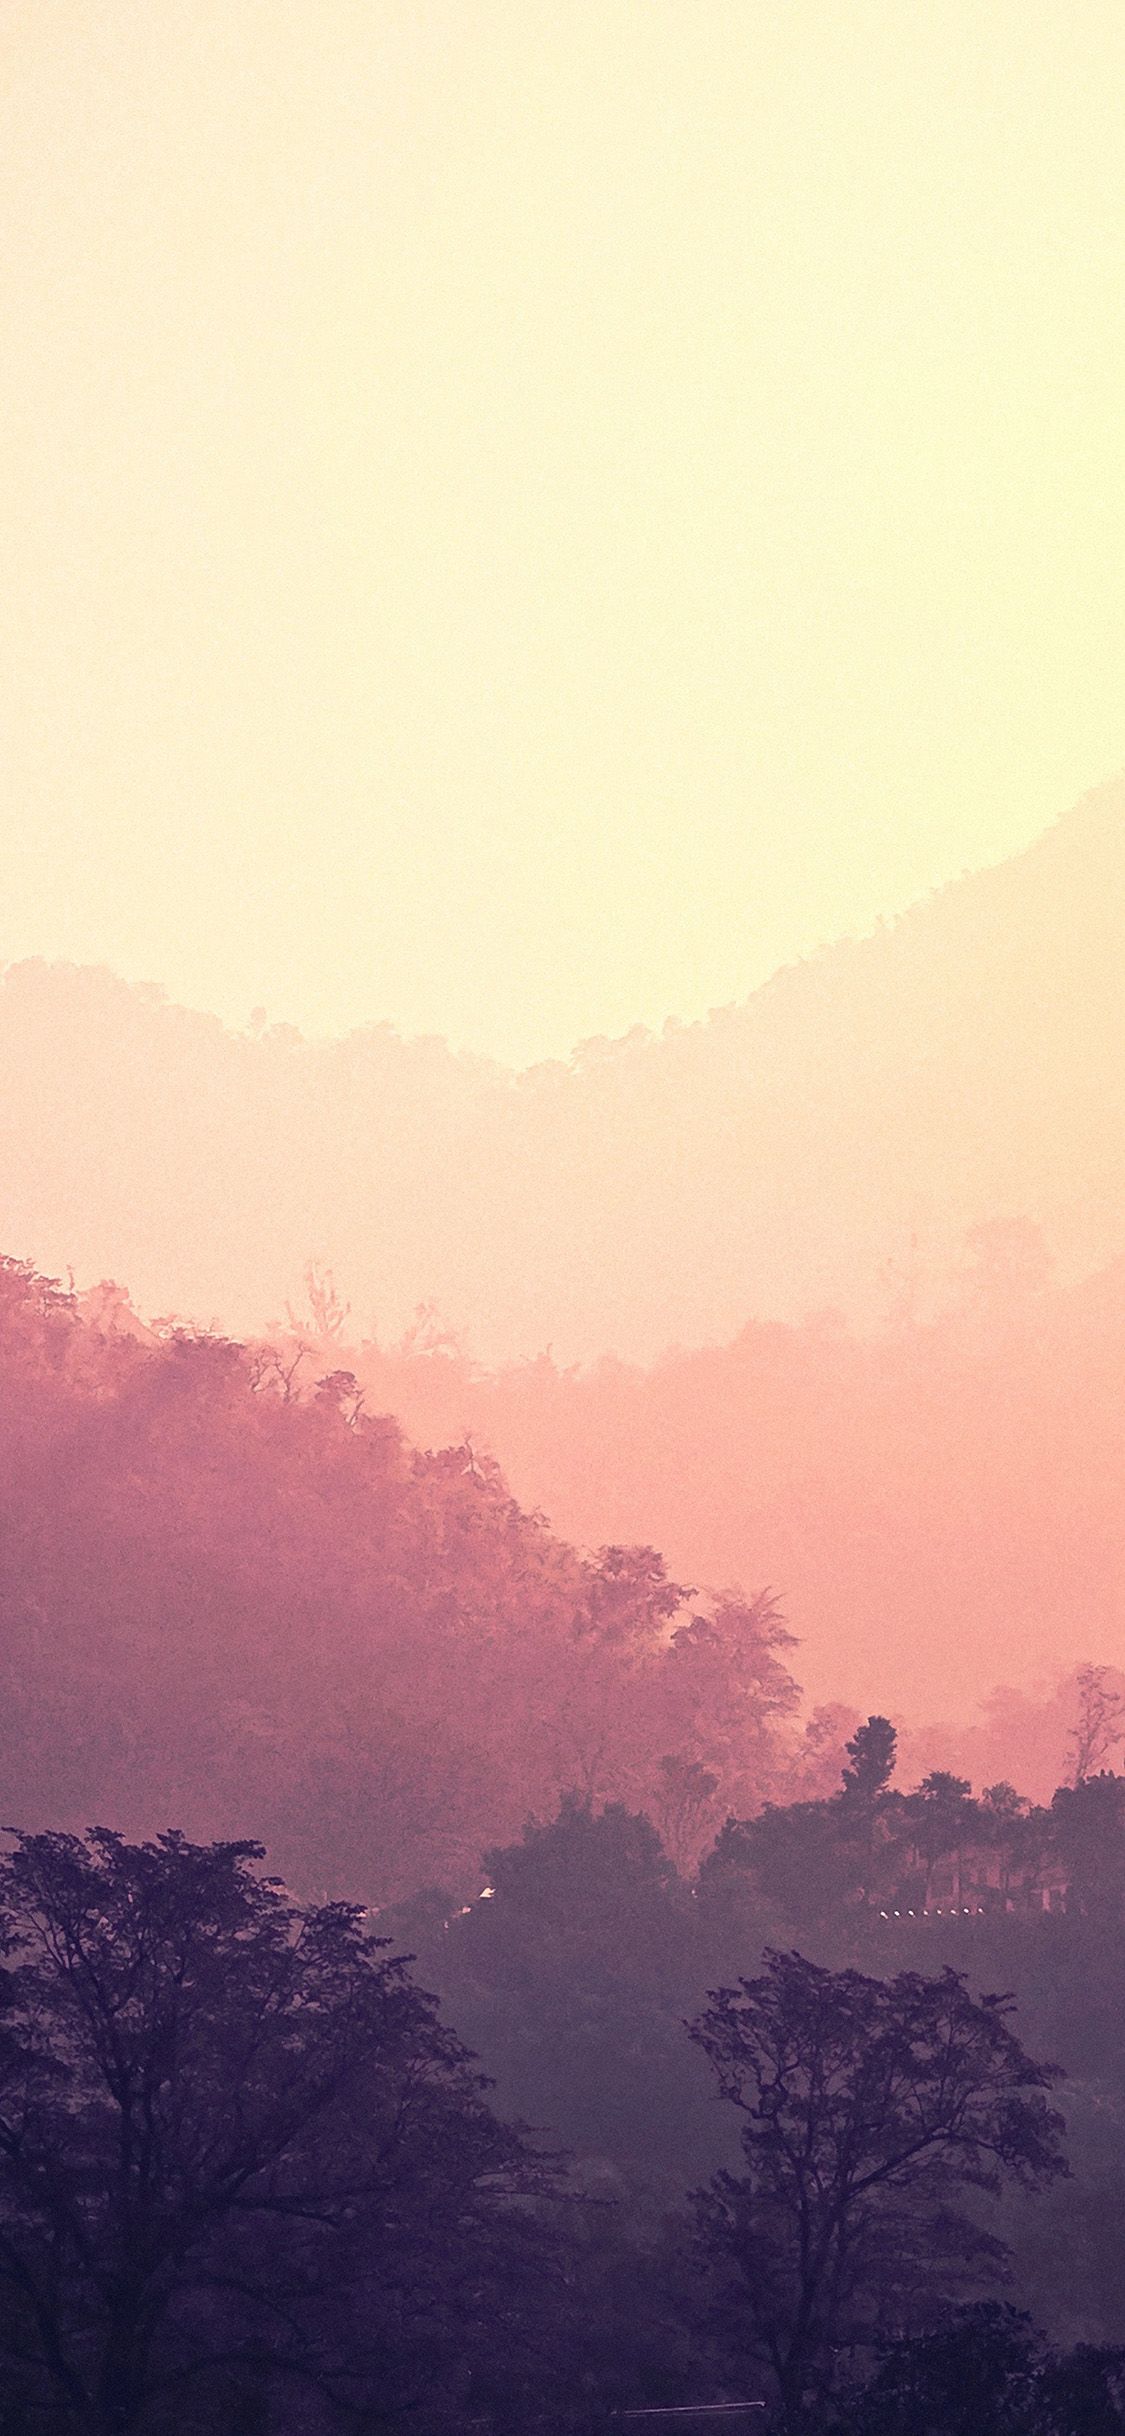 雾蒙蒙的森林唯美风景手机壁纸